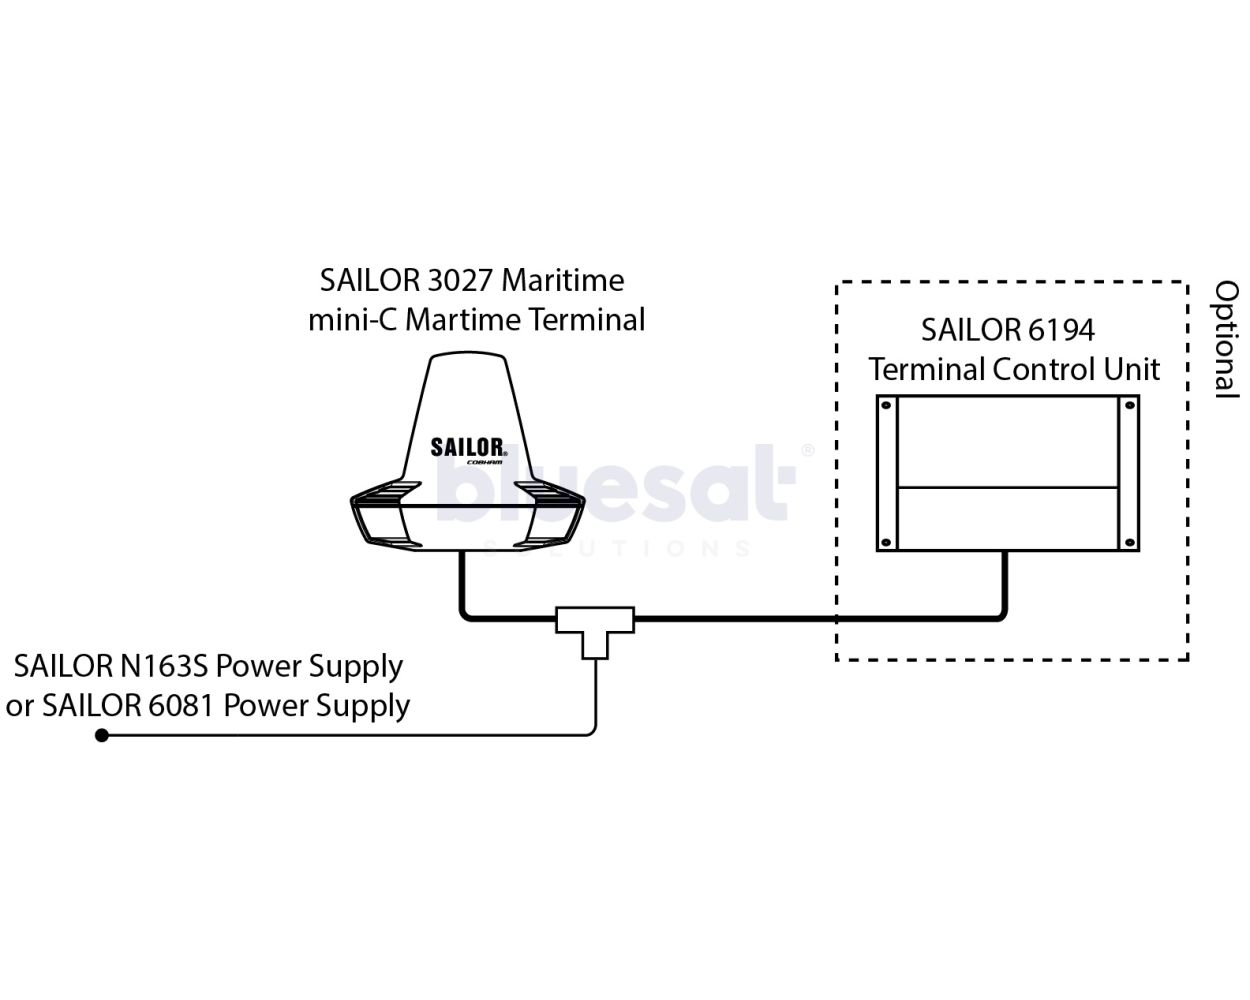 SAILOR 6140 mini-C Marine System